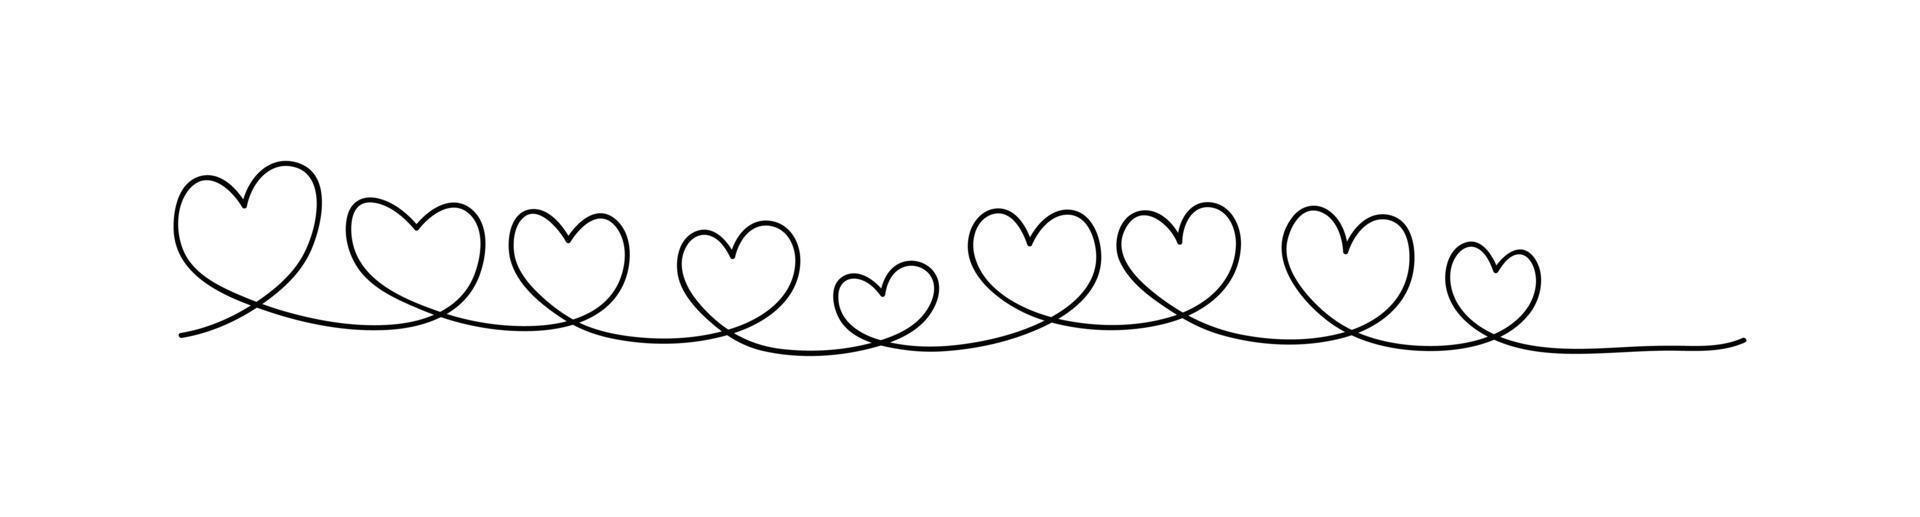 coeur de ligne noire sur fond blanc, style de dessin au trait, concept d'amour, conception vectorielle vecteur